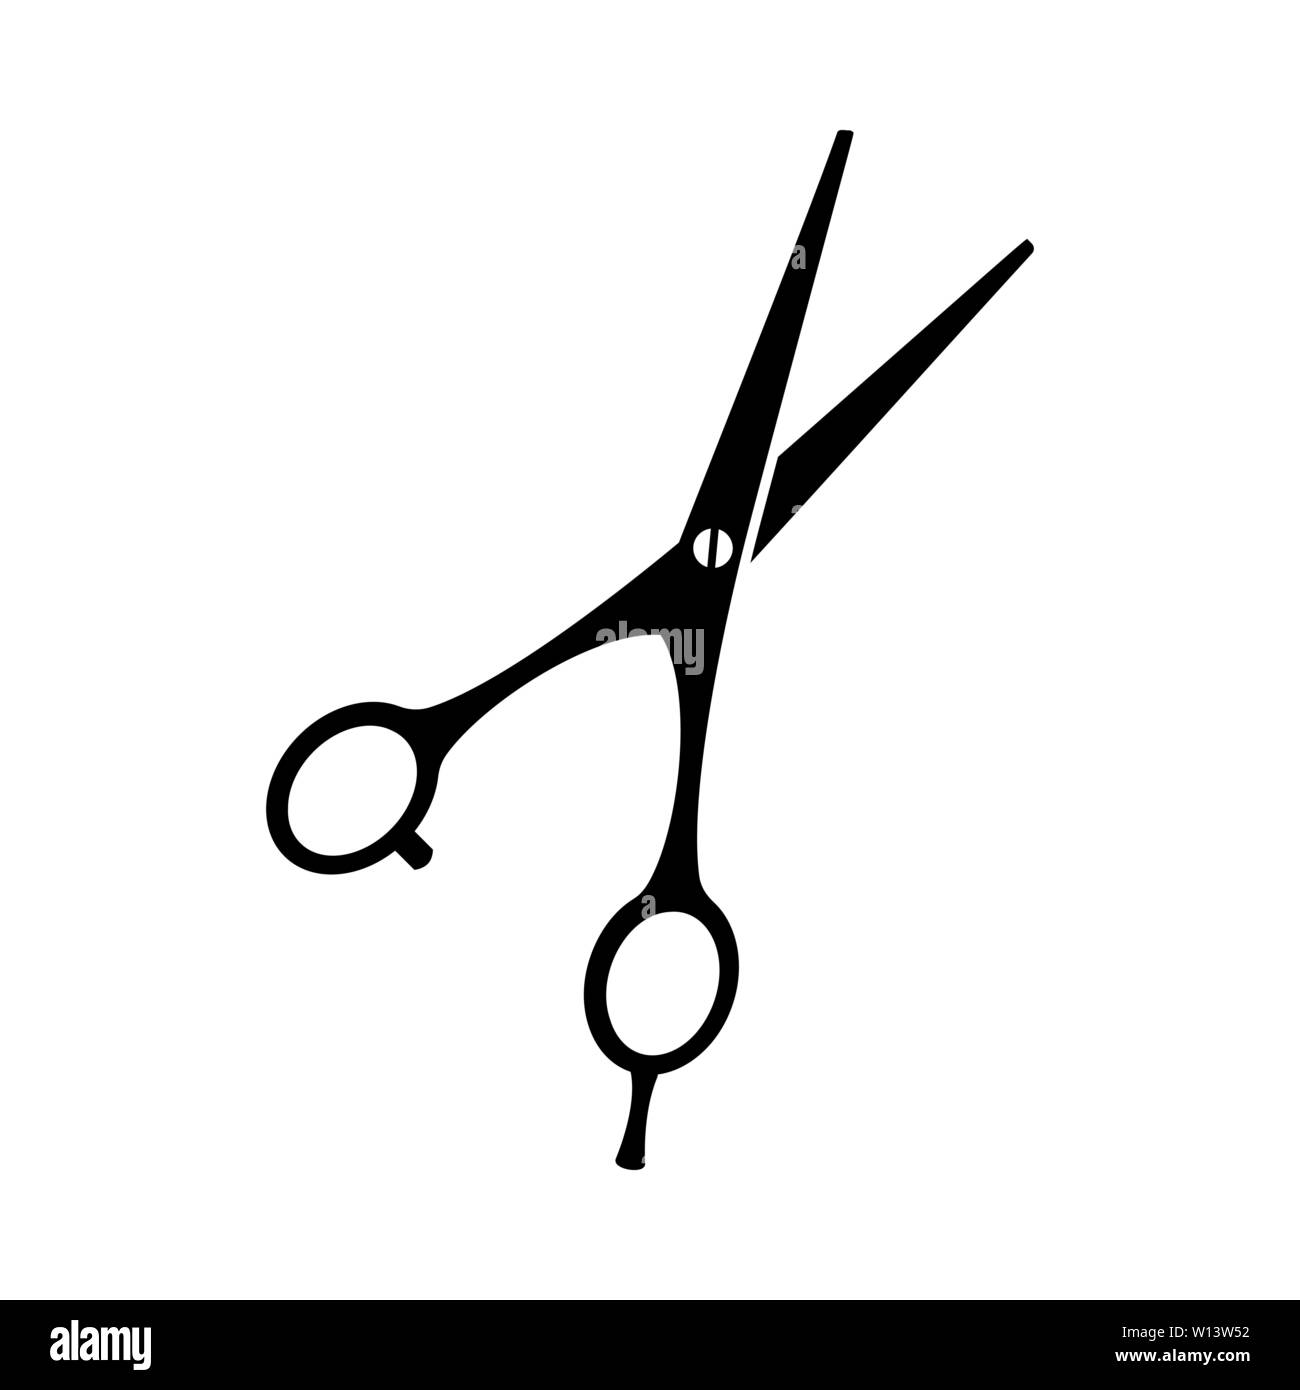 Black and white open scissors silhouette Stock Vector